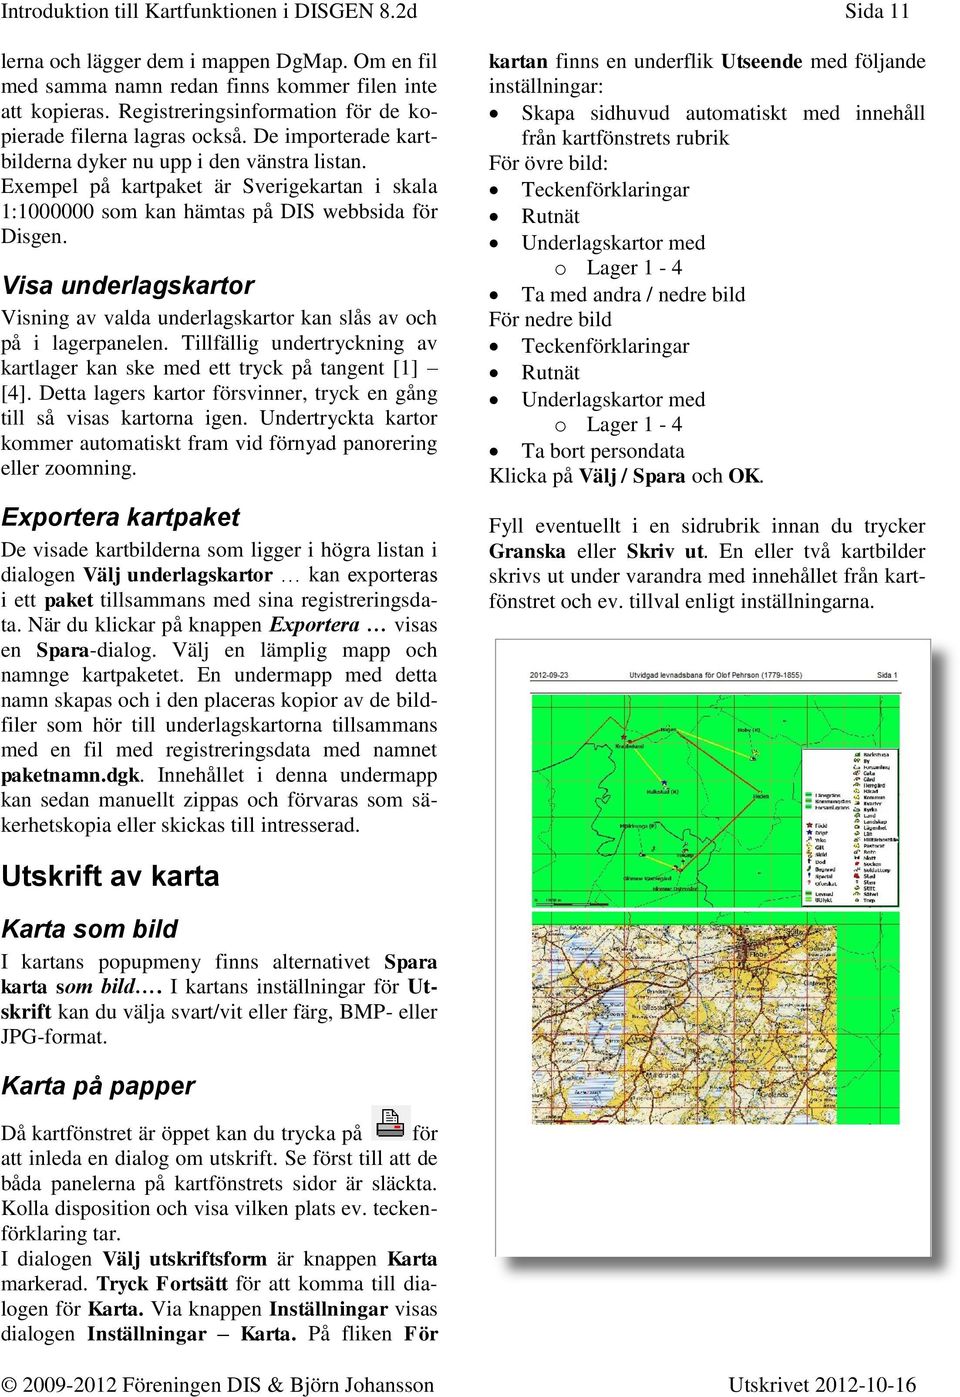 Exempel på kartpaket är Sverigekartan i skala 1:1000000 som kan hämtas på DIS webbsida för Disgen. Visa underlagskartor Visning av valda underlagskartor kan slås av och på i lagerpanelen.